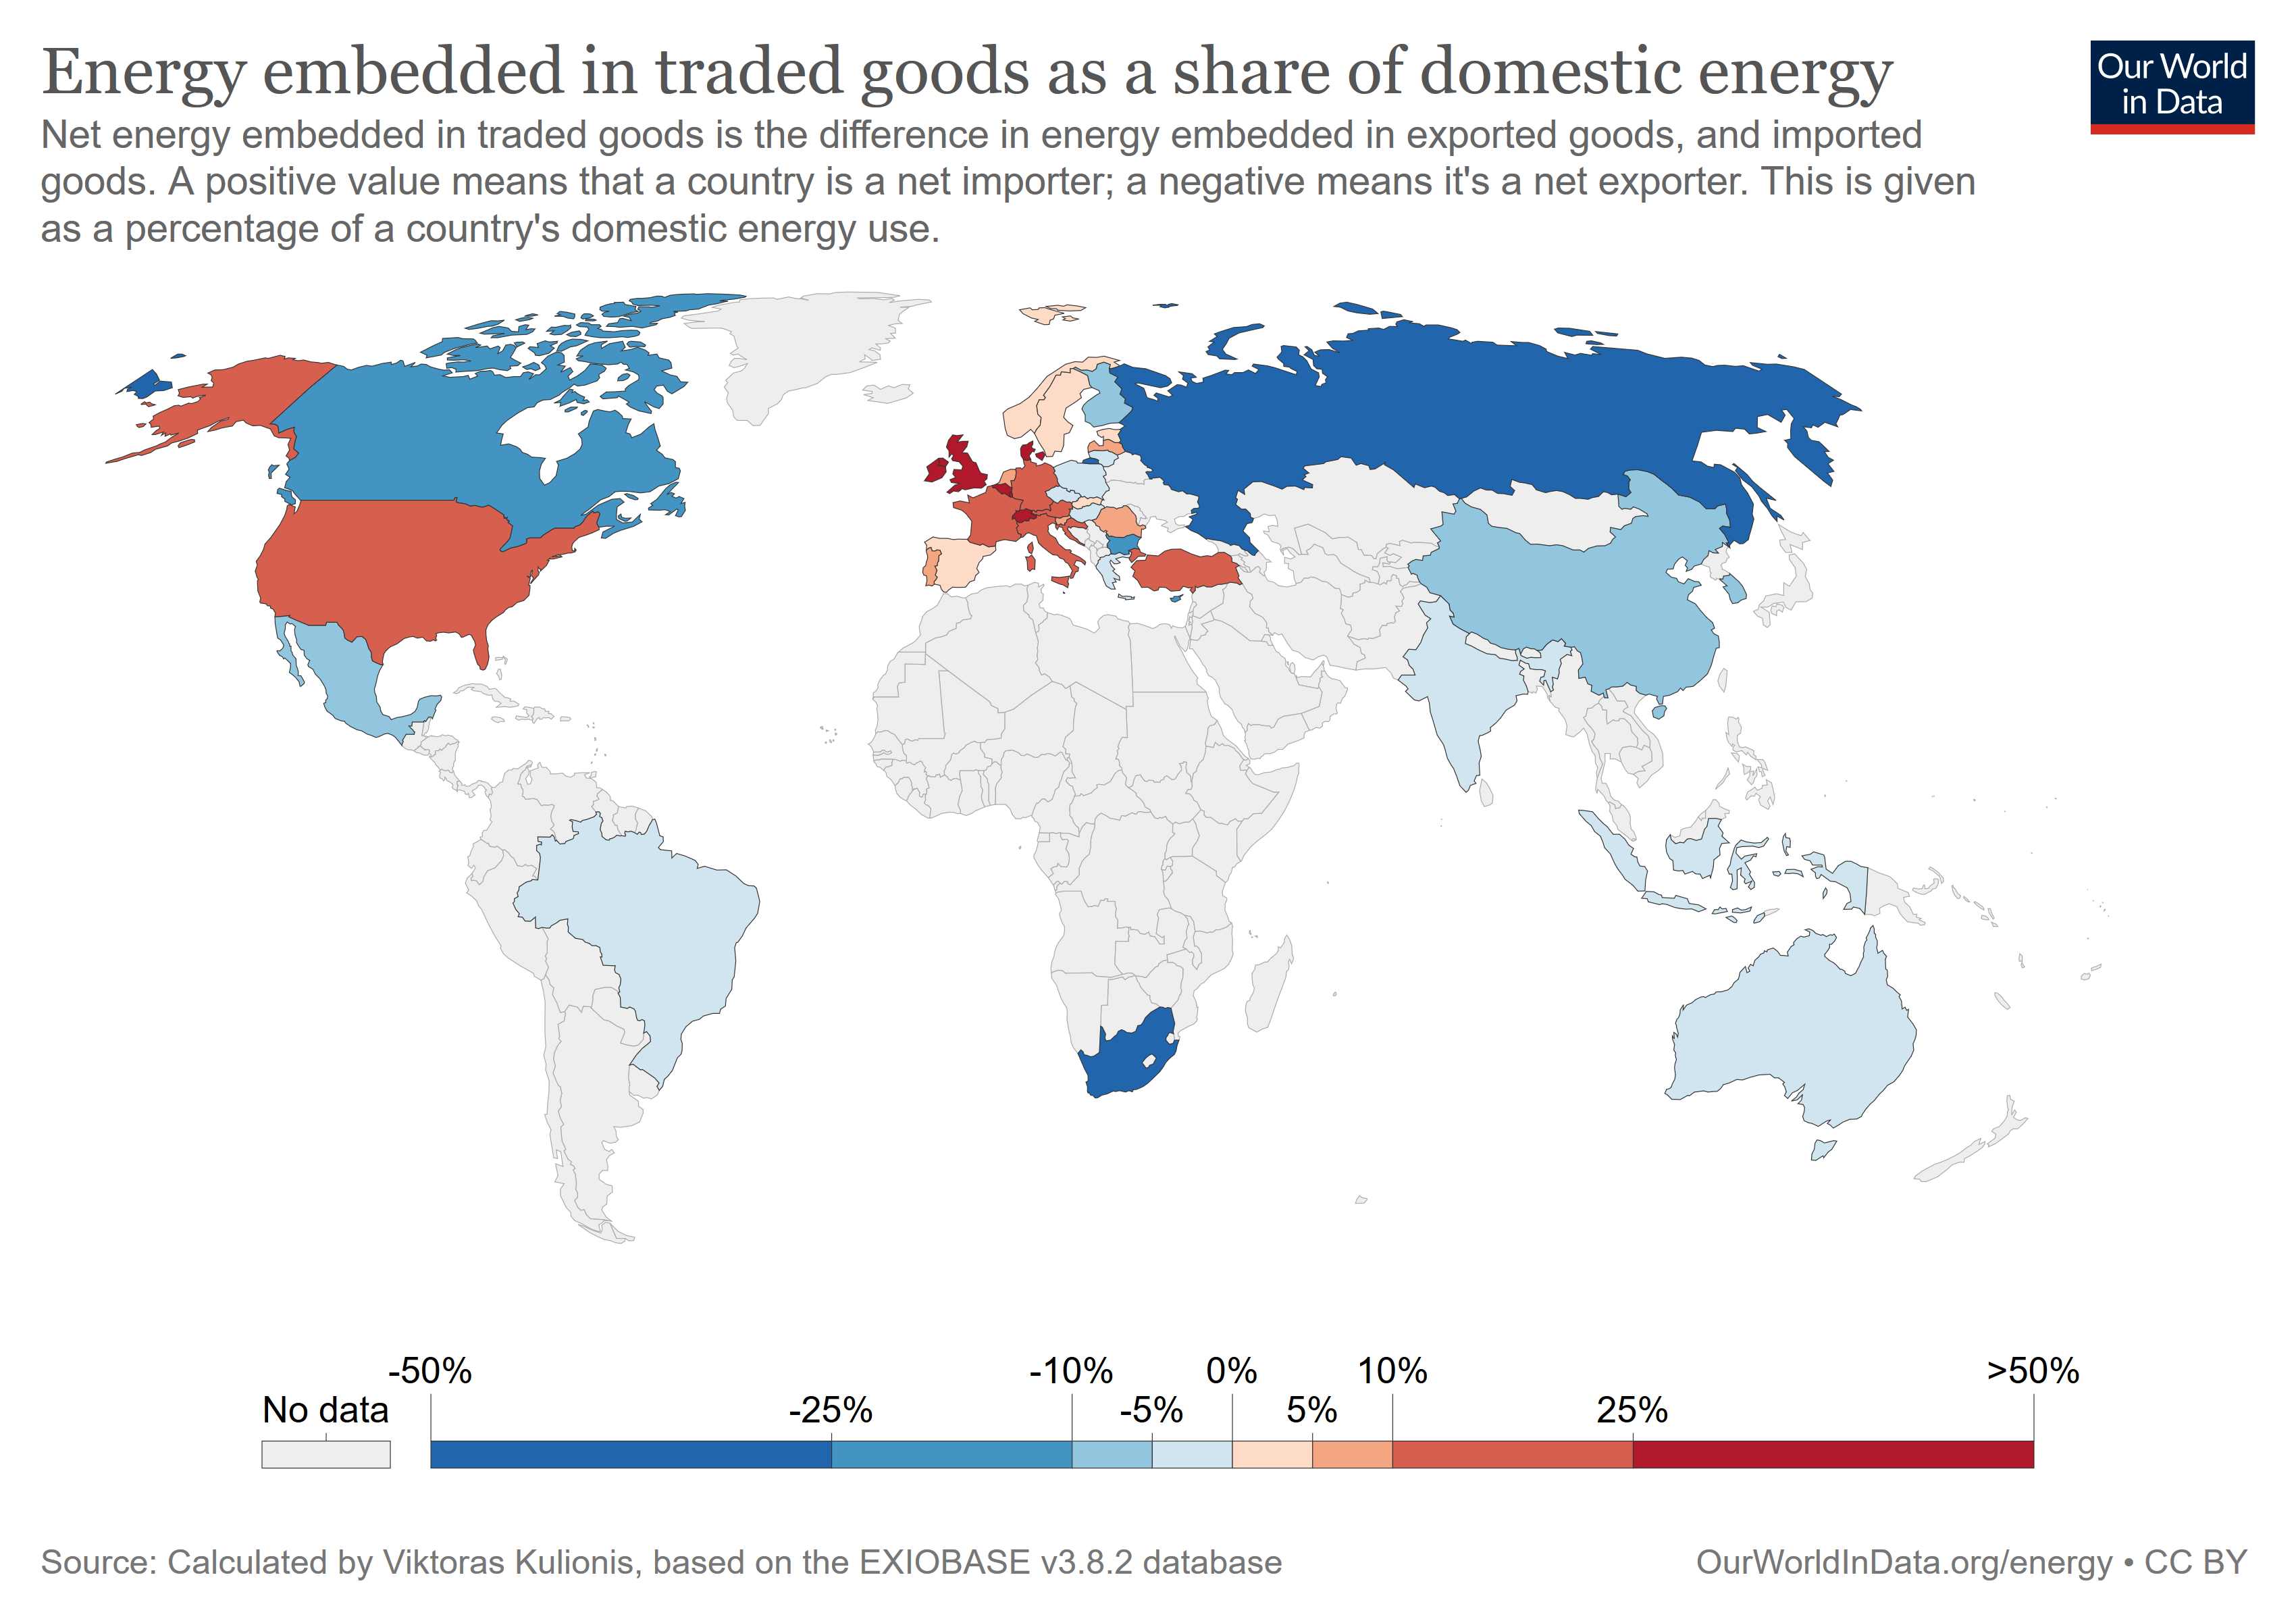 Die Weltkarte veranschaulicht, wie hoch der Anteil der inimportierten Handelsgütern steckenden Anteil (berechnet sind die Netto-Importe, als Importe abzüglich der Exporte) am Inlandsverbrauch liegt. Je dunkler das rot, desto höher dieser Anteil, je heller das Blau, desto grösser ist der exportierte Anteil. 